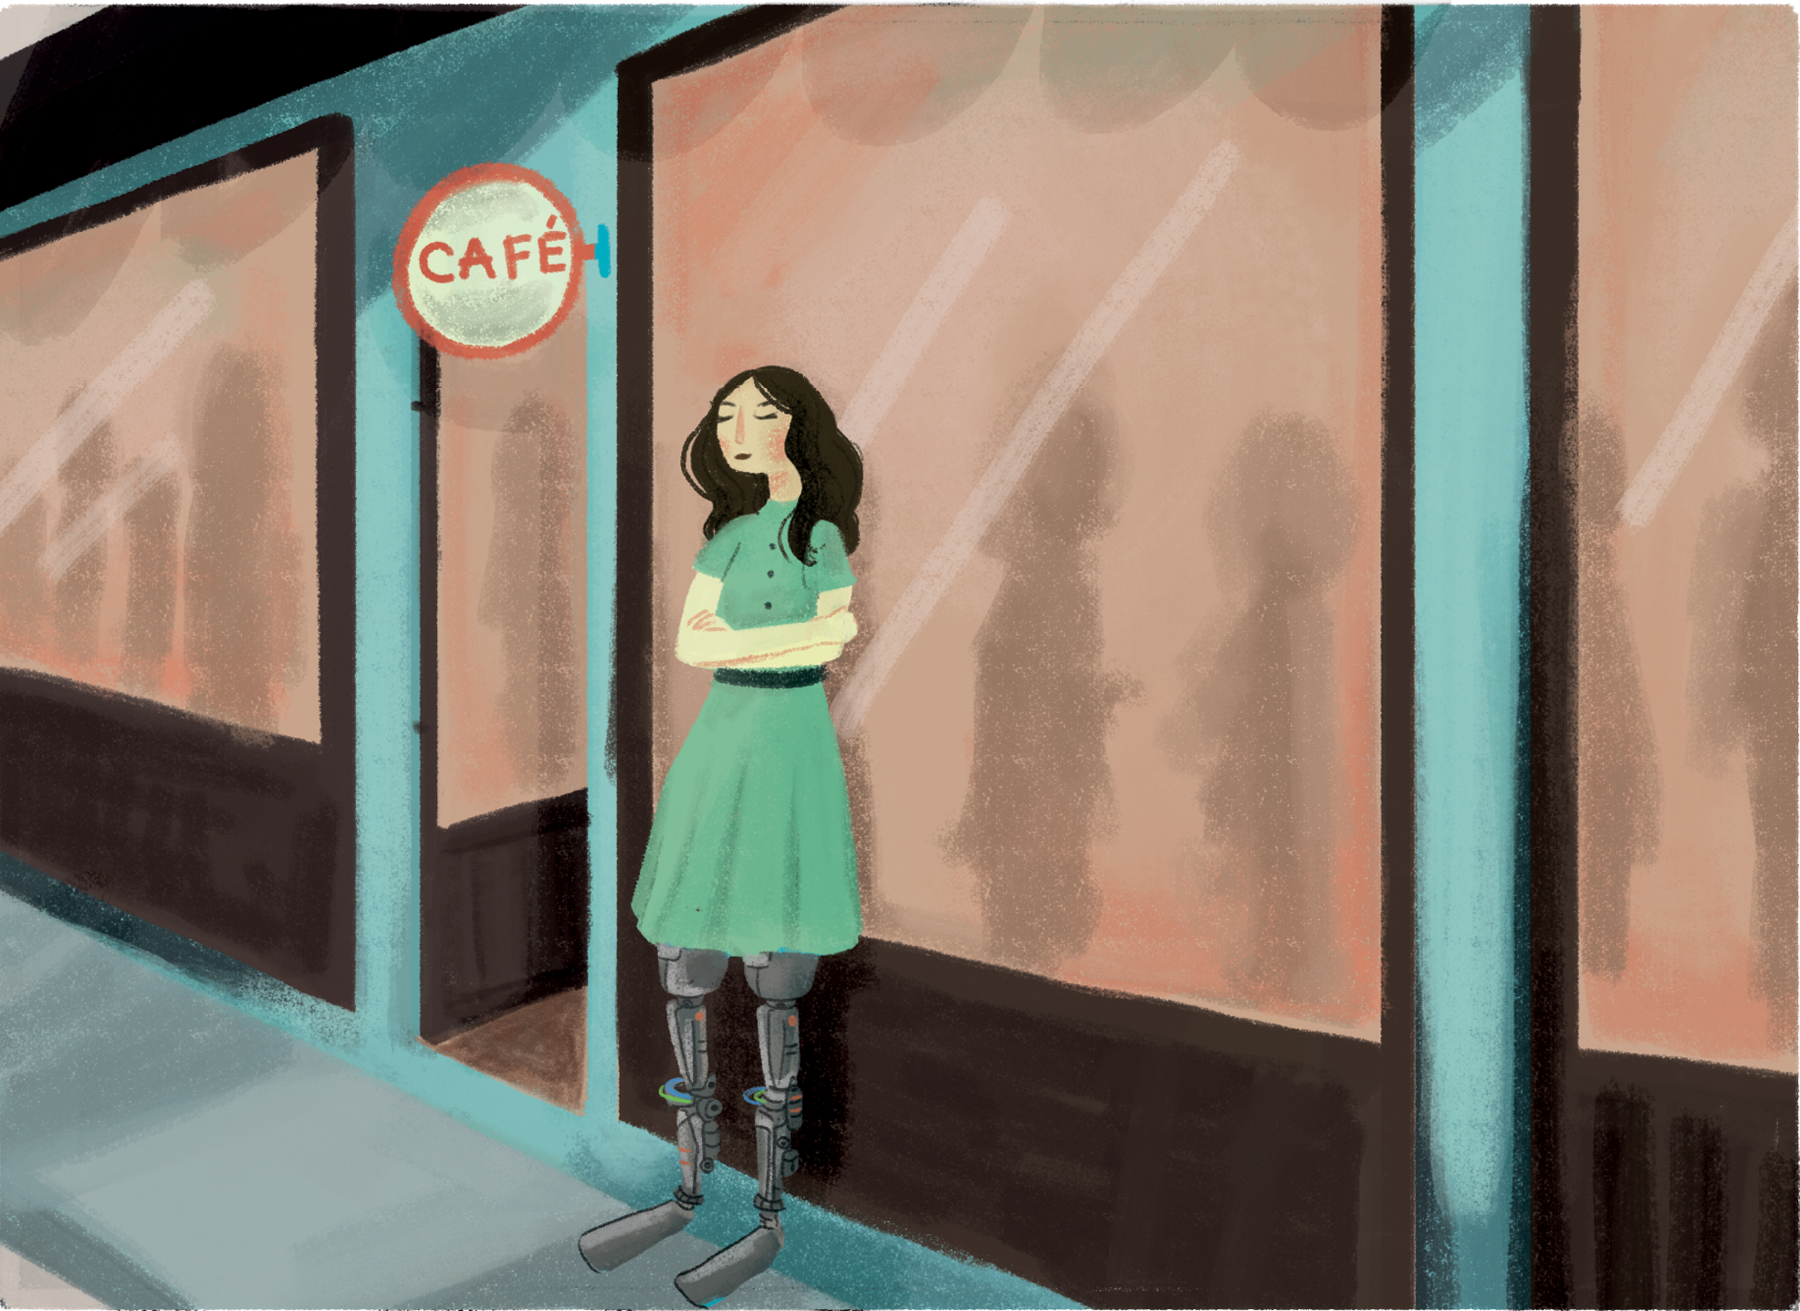 Ilustração. Uma mulher de cabelos pretos, usando vestido verde, que tem duas próteses de metal em lugar das pernas está em pé de braços cruzados em uma calçada. Ela está em frente a uma loja com a placa 'CAFÉ', de costas para a vitrine. Dentro da loja há silhuetas de diversas pessoas em pé conversando.